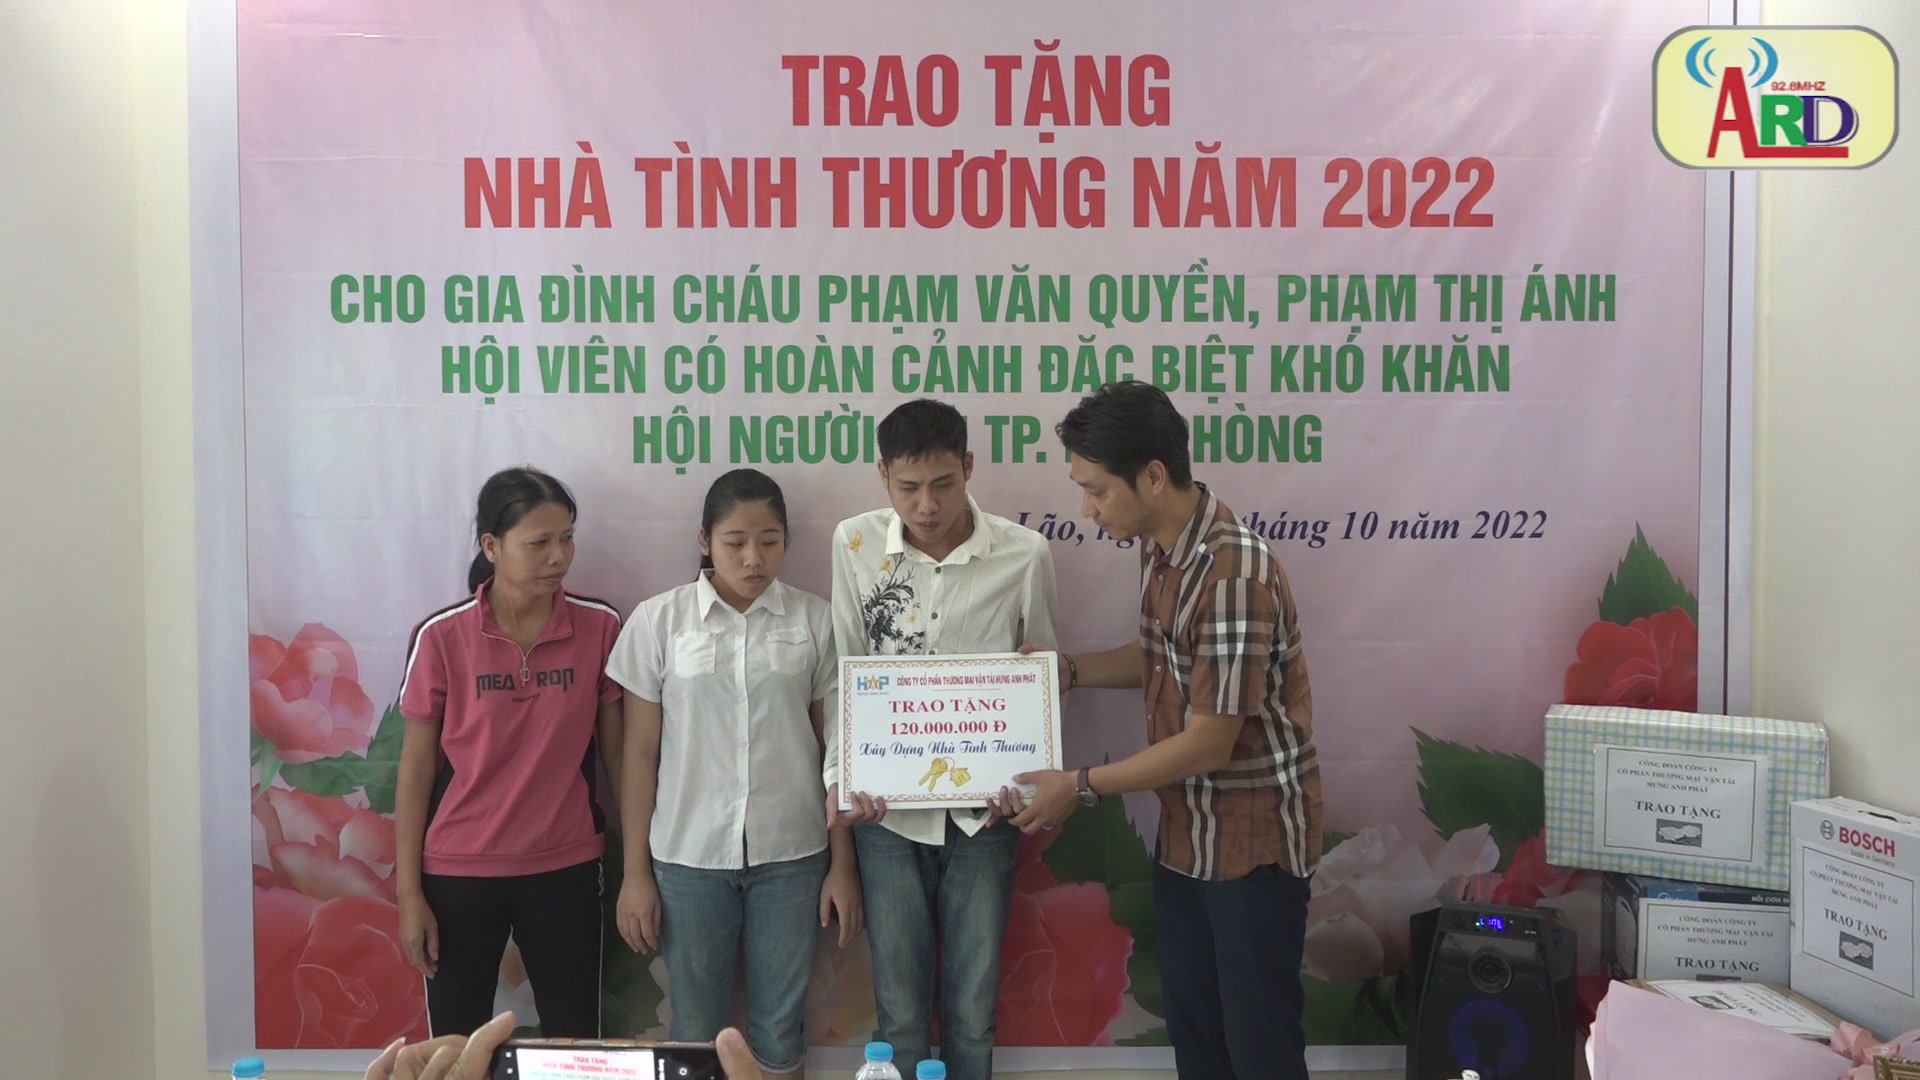 Trao tặng nhà tình thương cho gia đình cháu Phạm Văn Quyền 